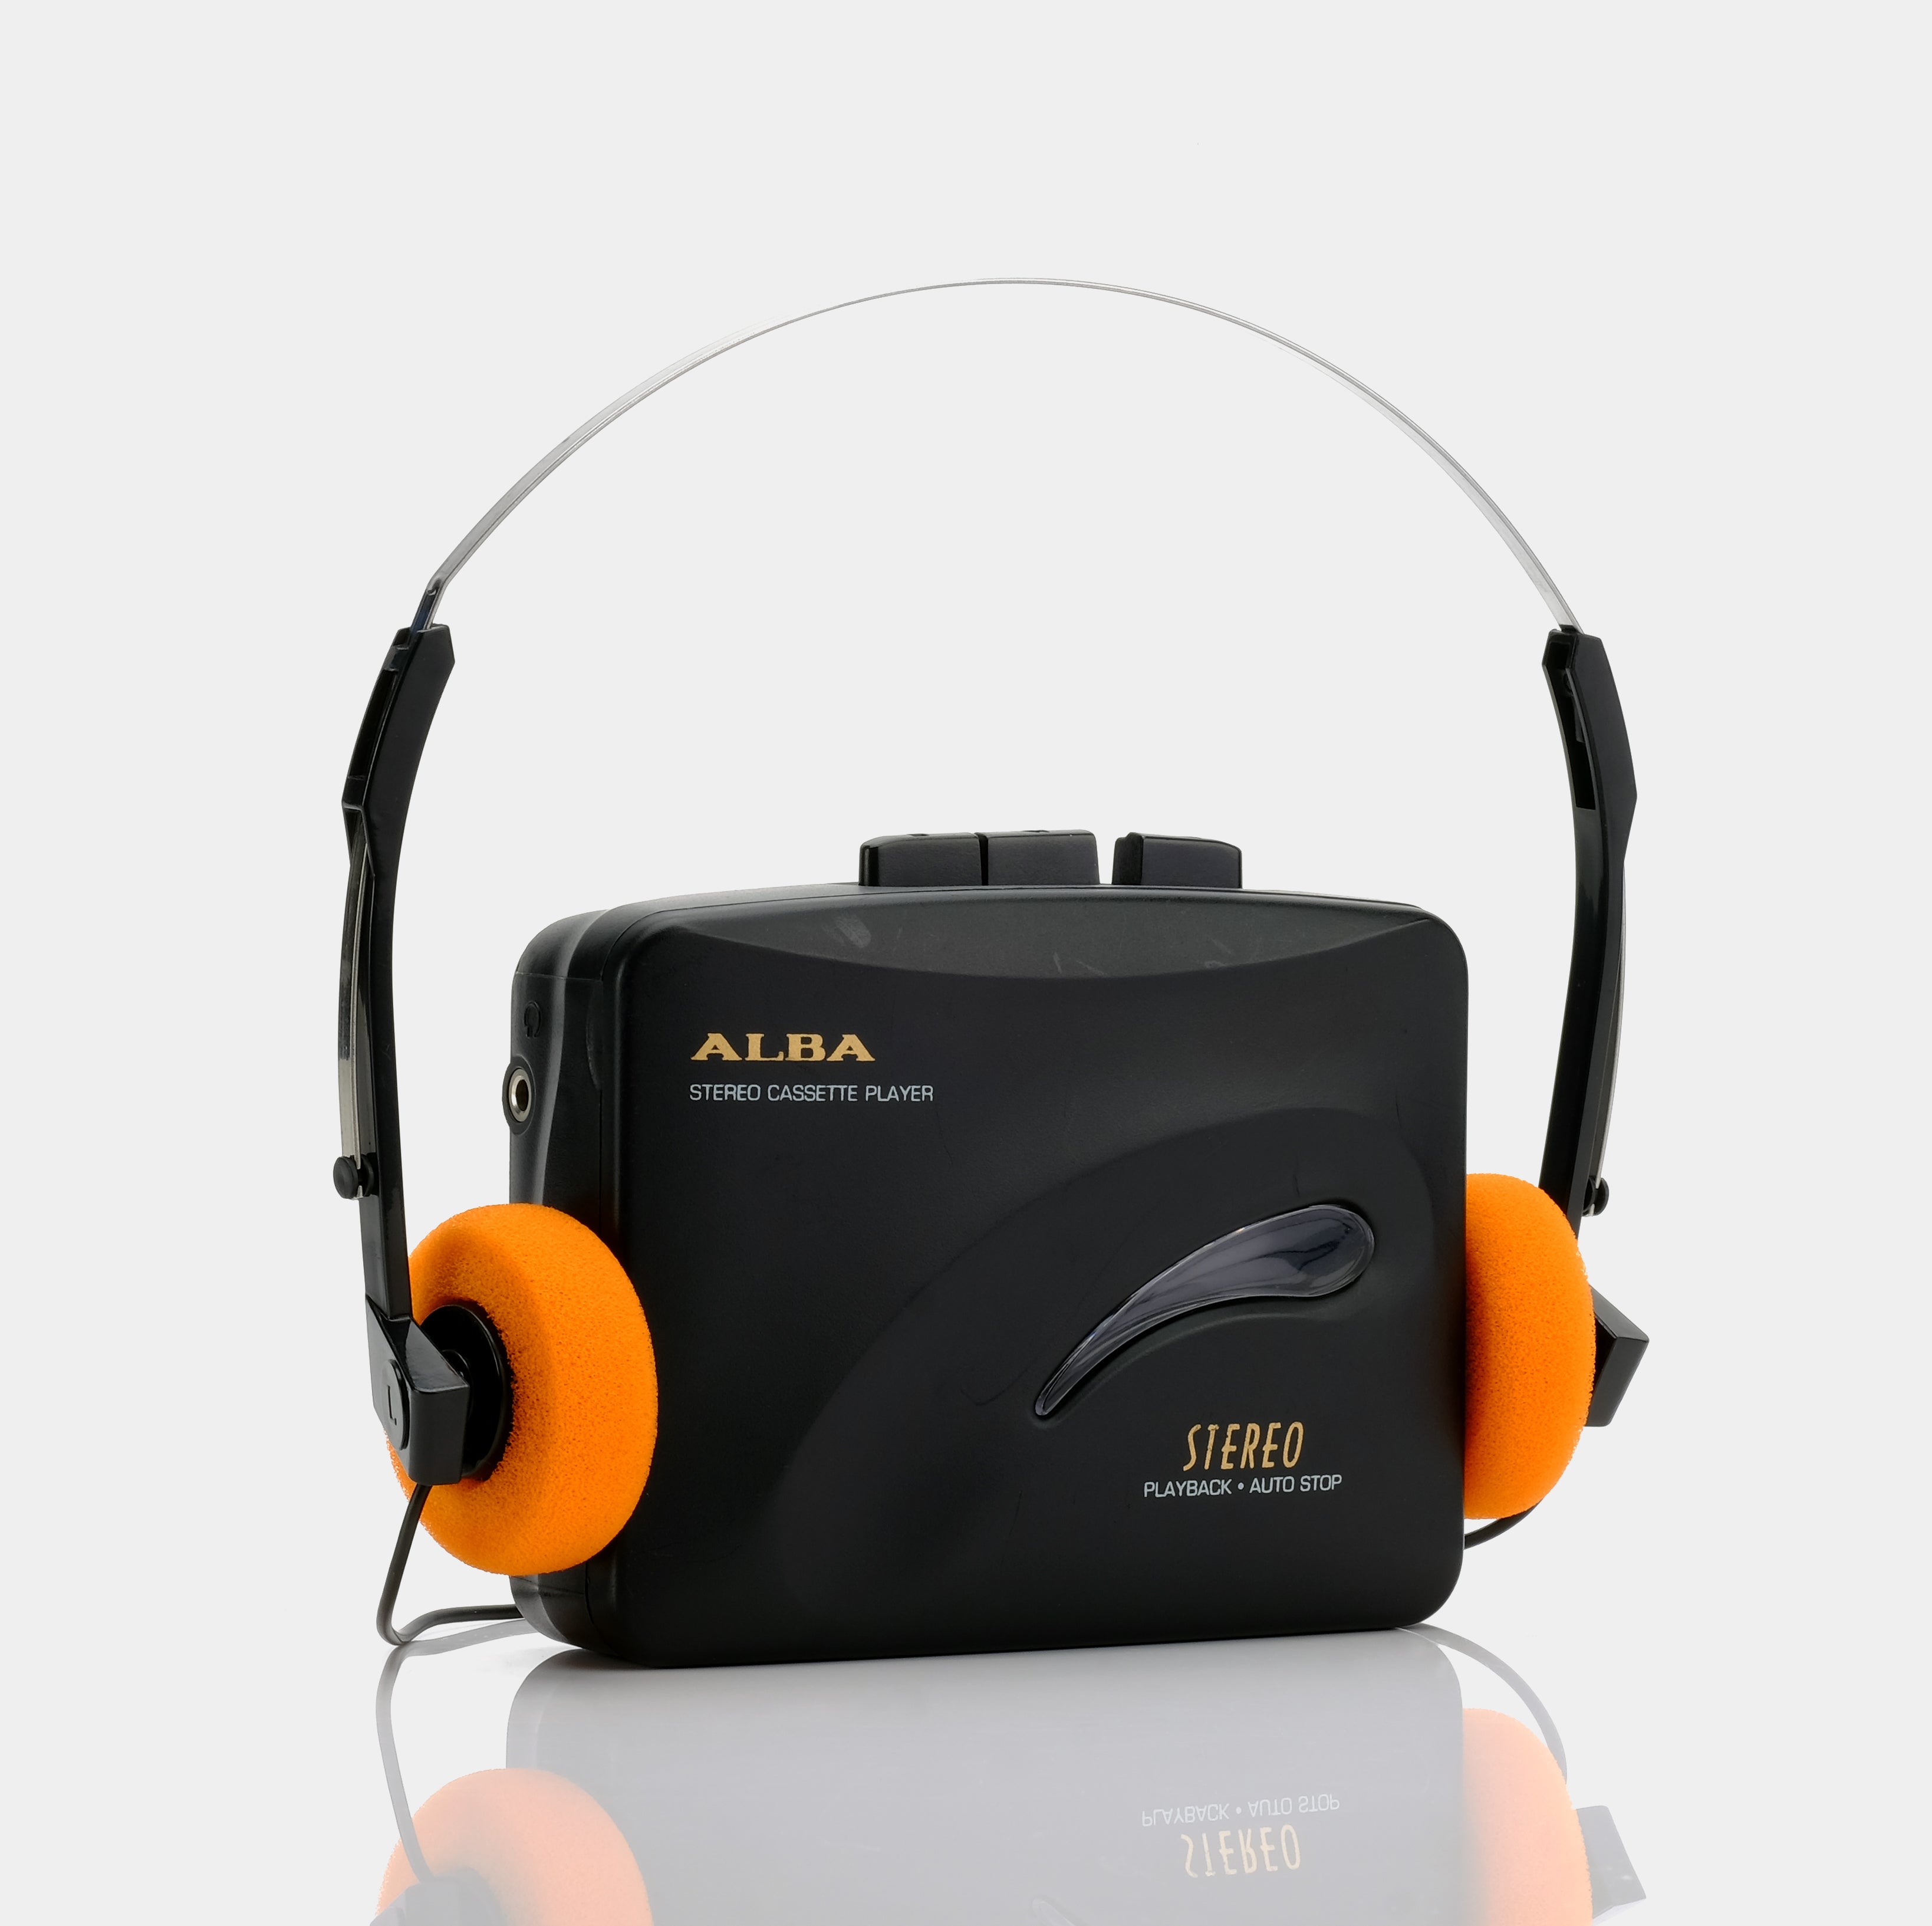 Alba CP705 Stereo Portable Cassette Player